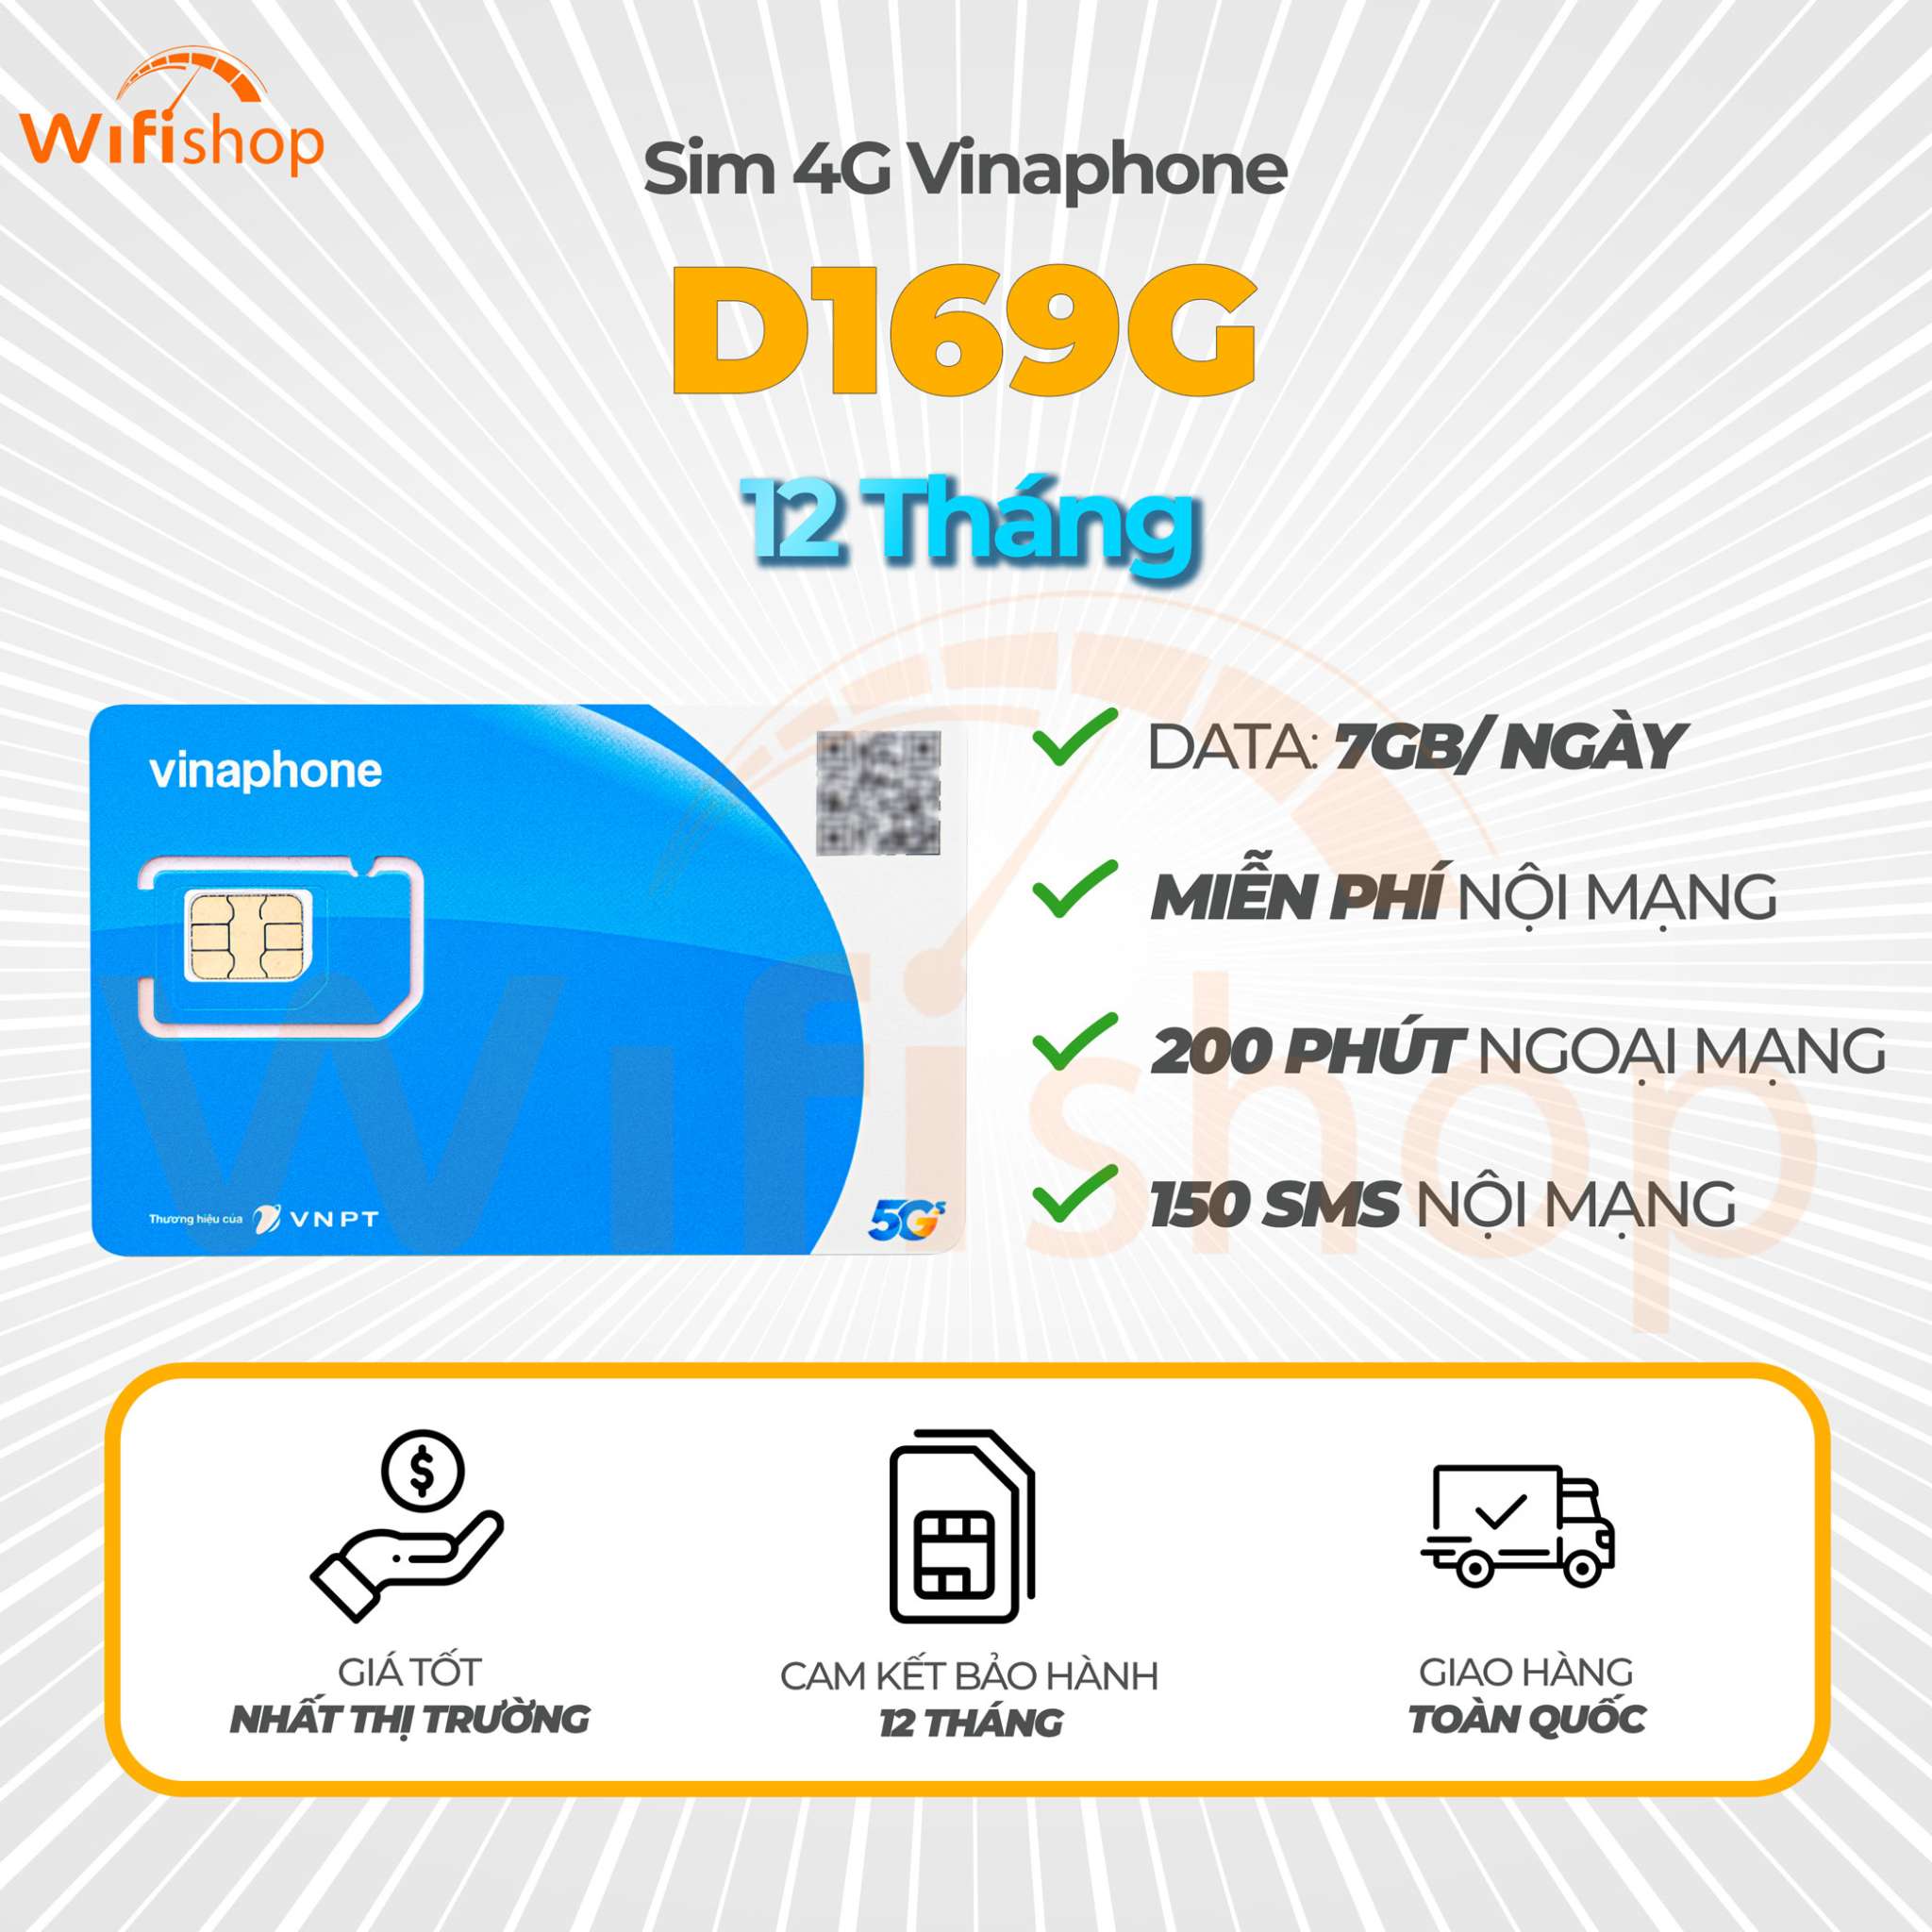 Sim5G Vinaphone D169G 7GB/Ngày, Miễn Phí Nội Mạng, 200 Phút Ngoại Mạng, Trọn Gói 12 Tháng